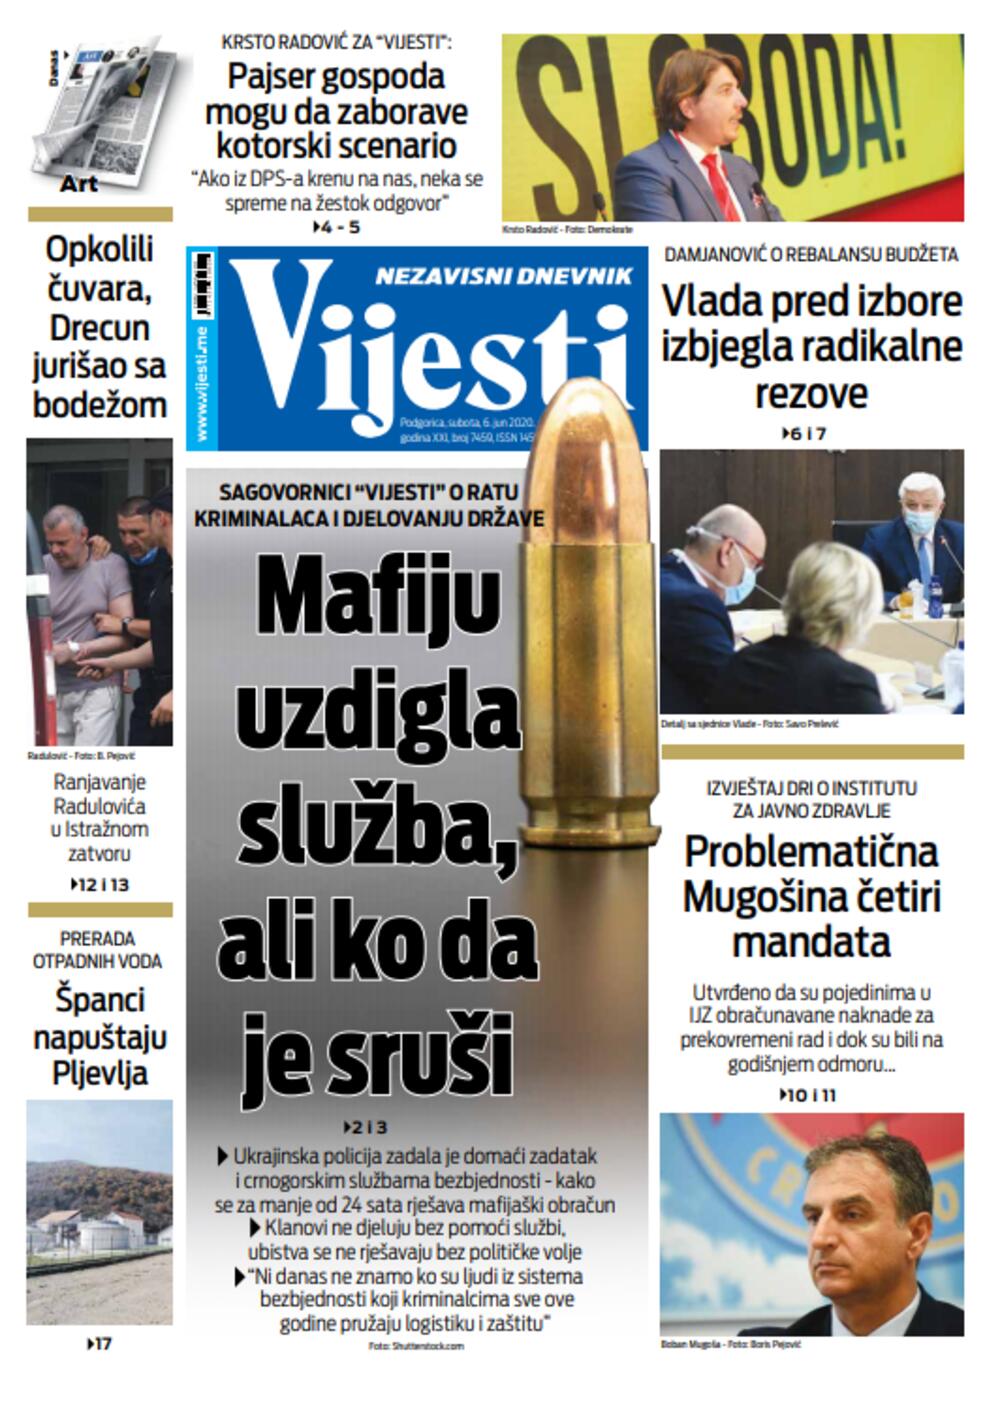 Naslovna strana "Vijesti" za šesti jun, Foto: Vijesti